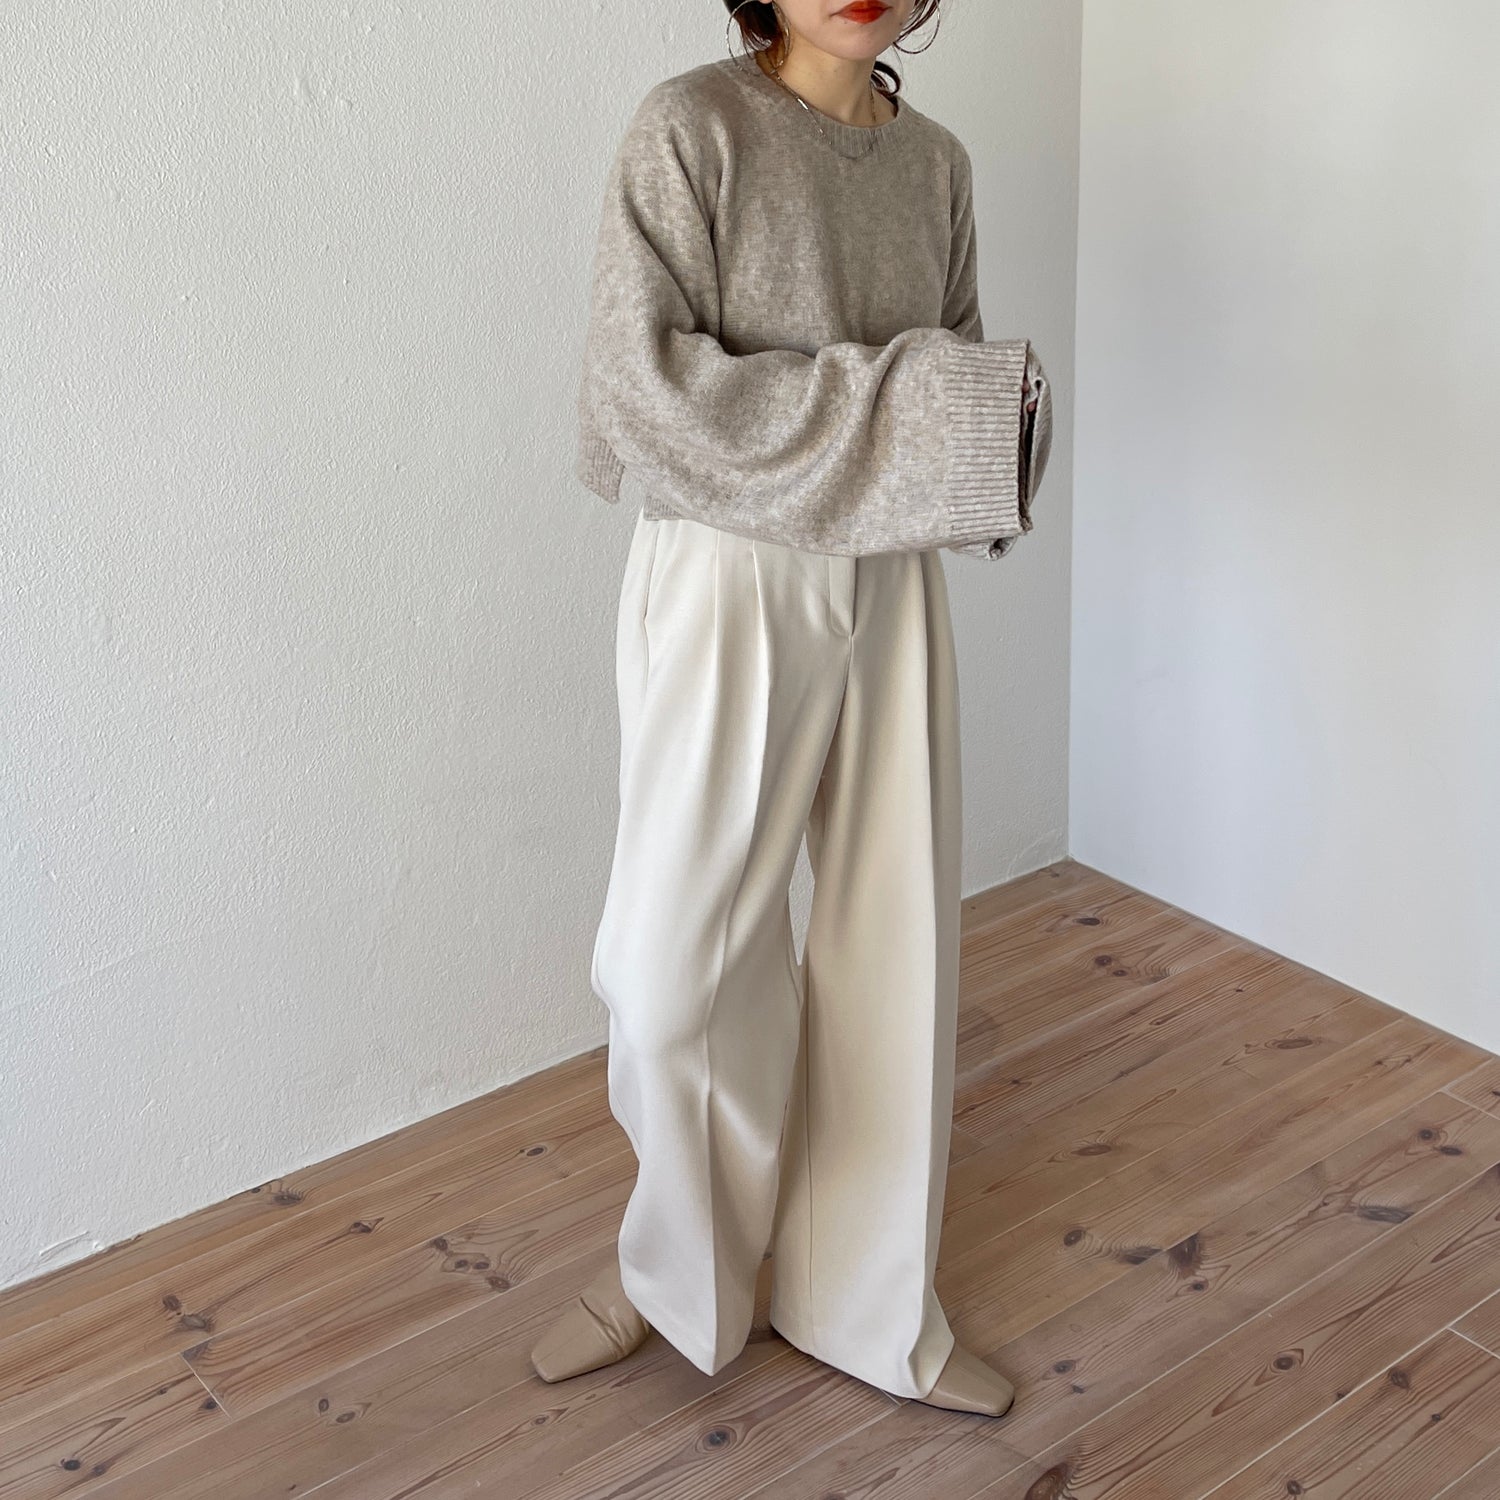 wide sleeve short knit / beige